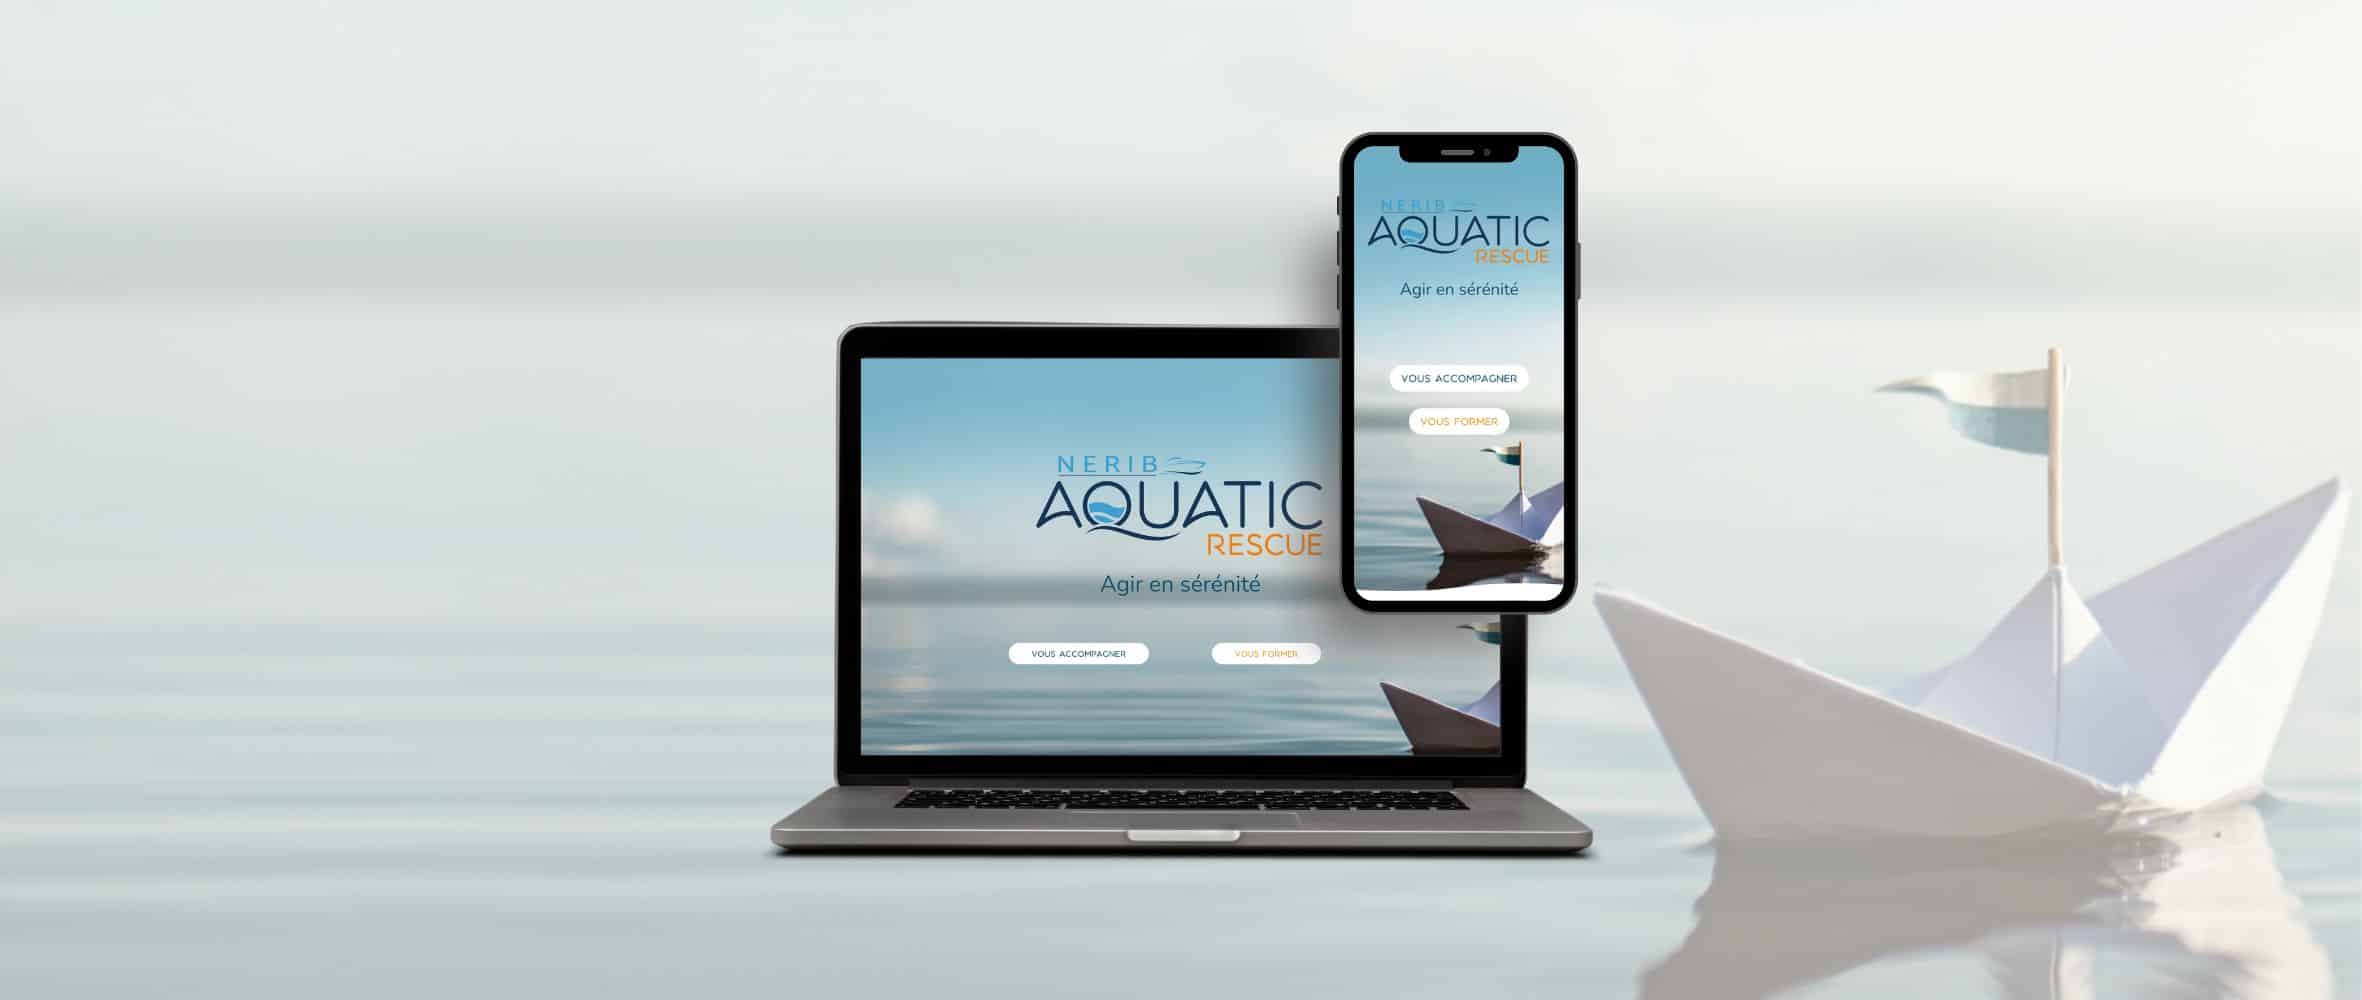 Aquatic Rescue - Mockup